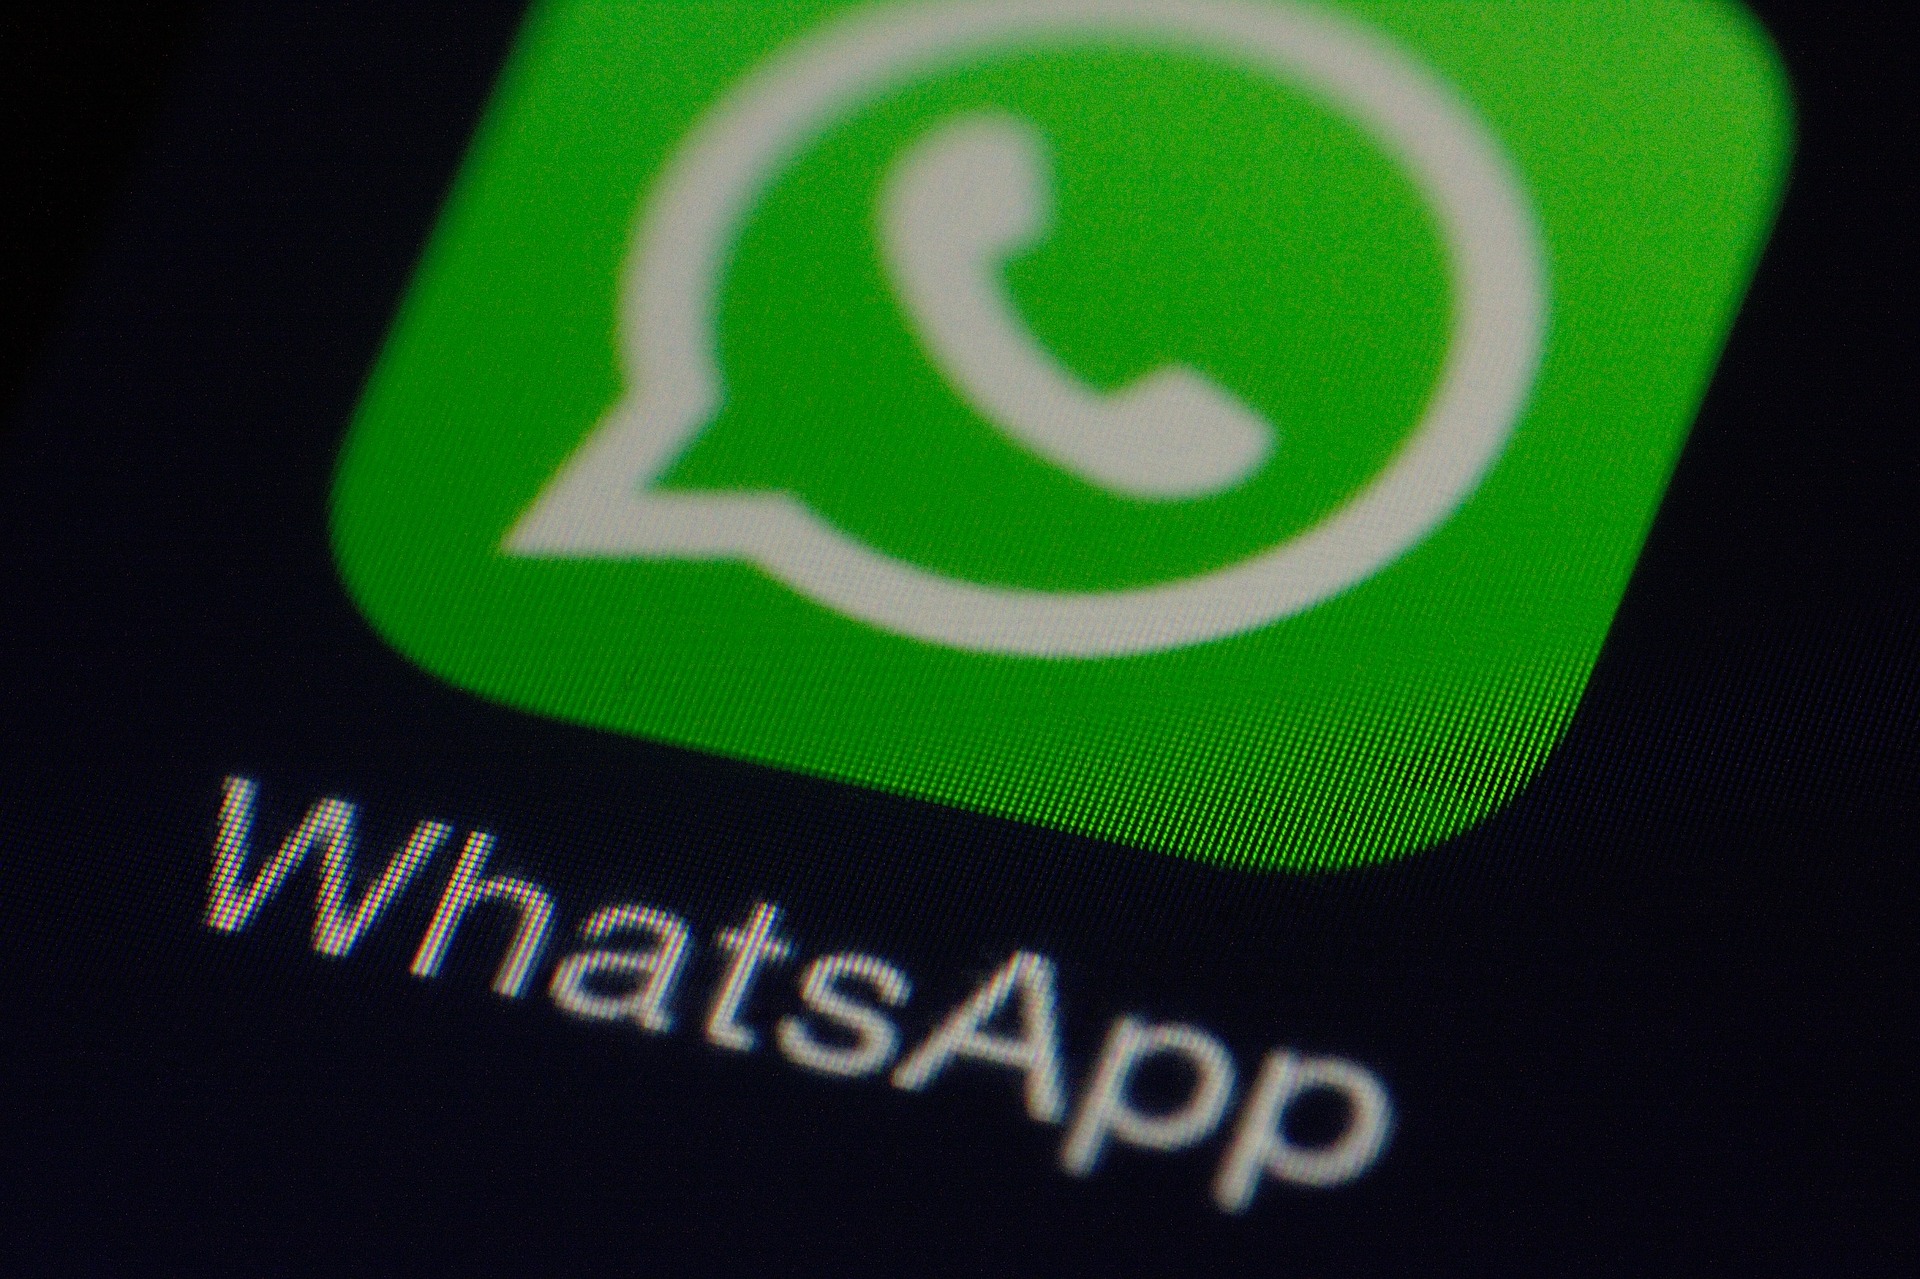 WhatsApp precisa de ajustes na política de privacidade, diz MPF